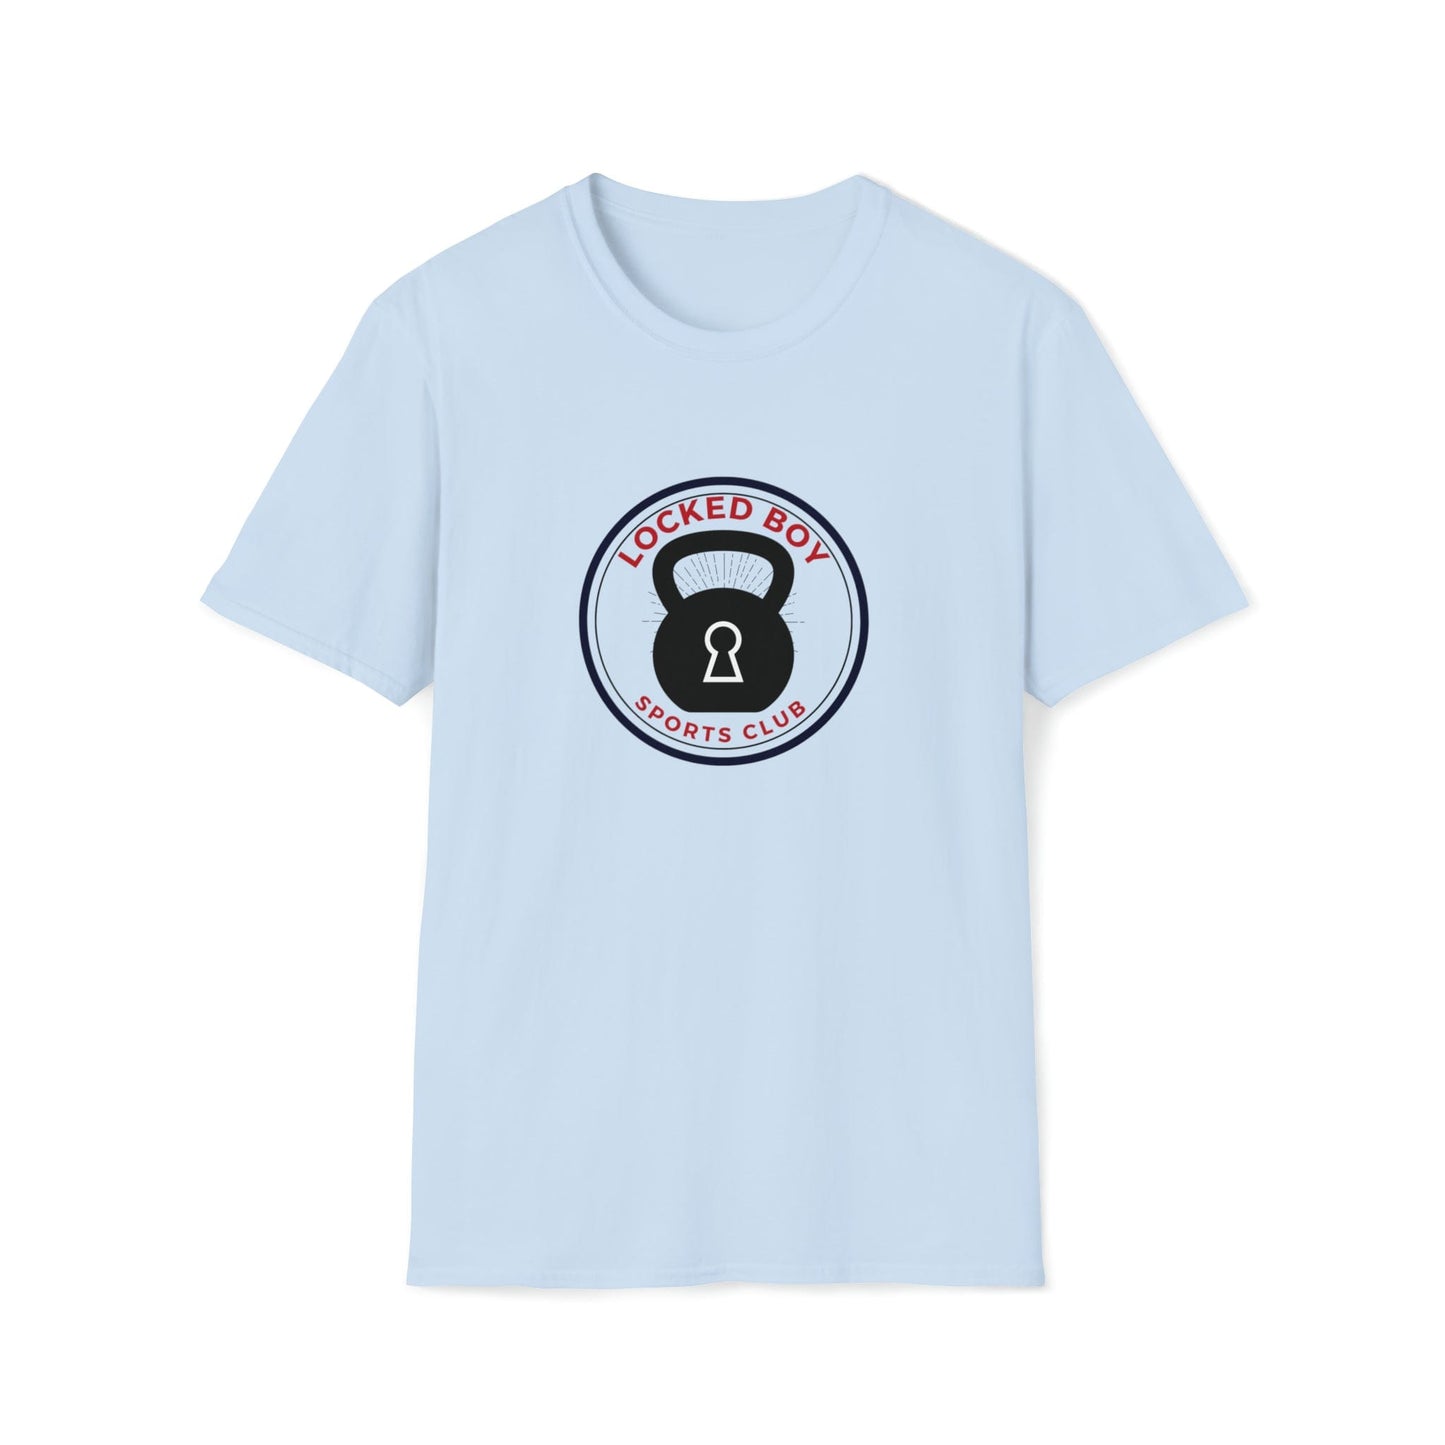 T-Shirt Light Blue / S LockedBoy Sports Club - Chastity Tshirt Kettlebell LEATHERDADDY BATOR